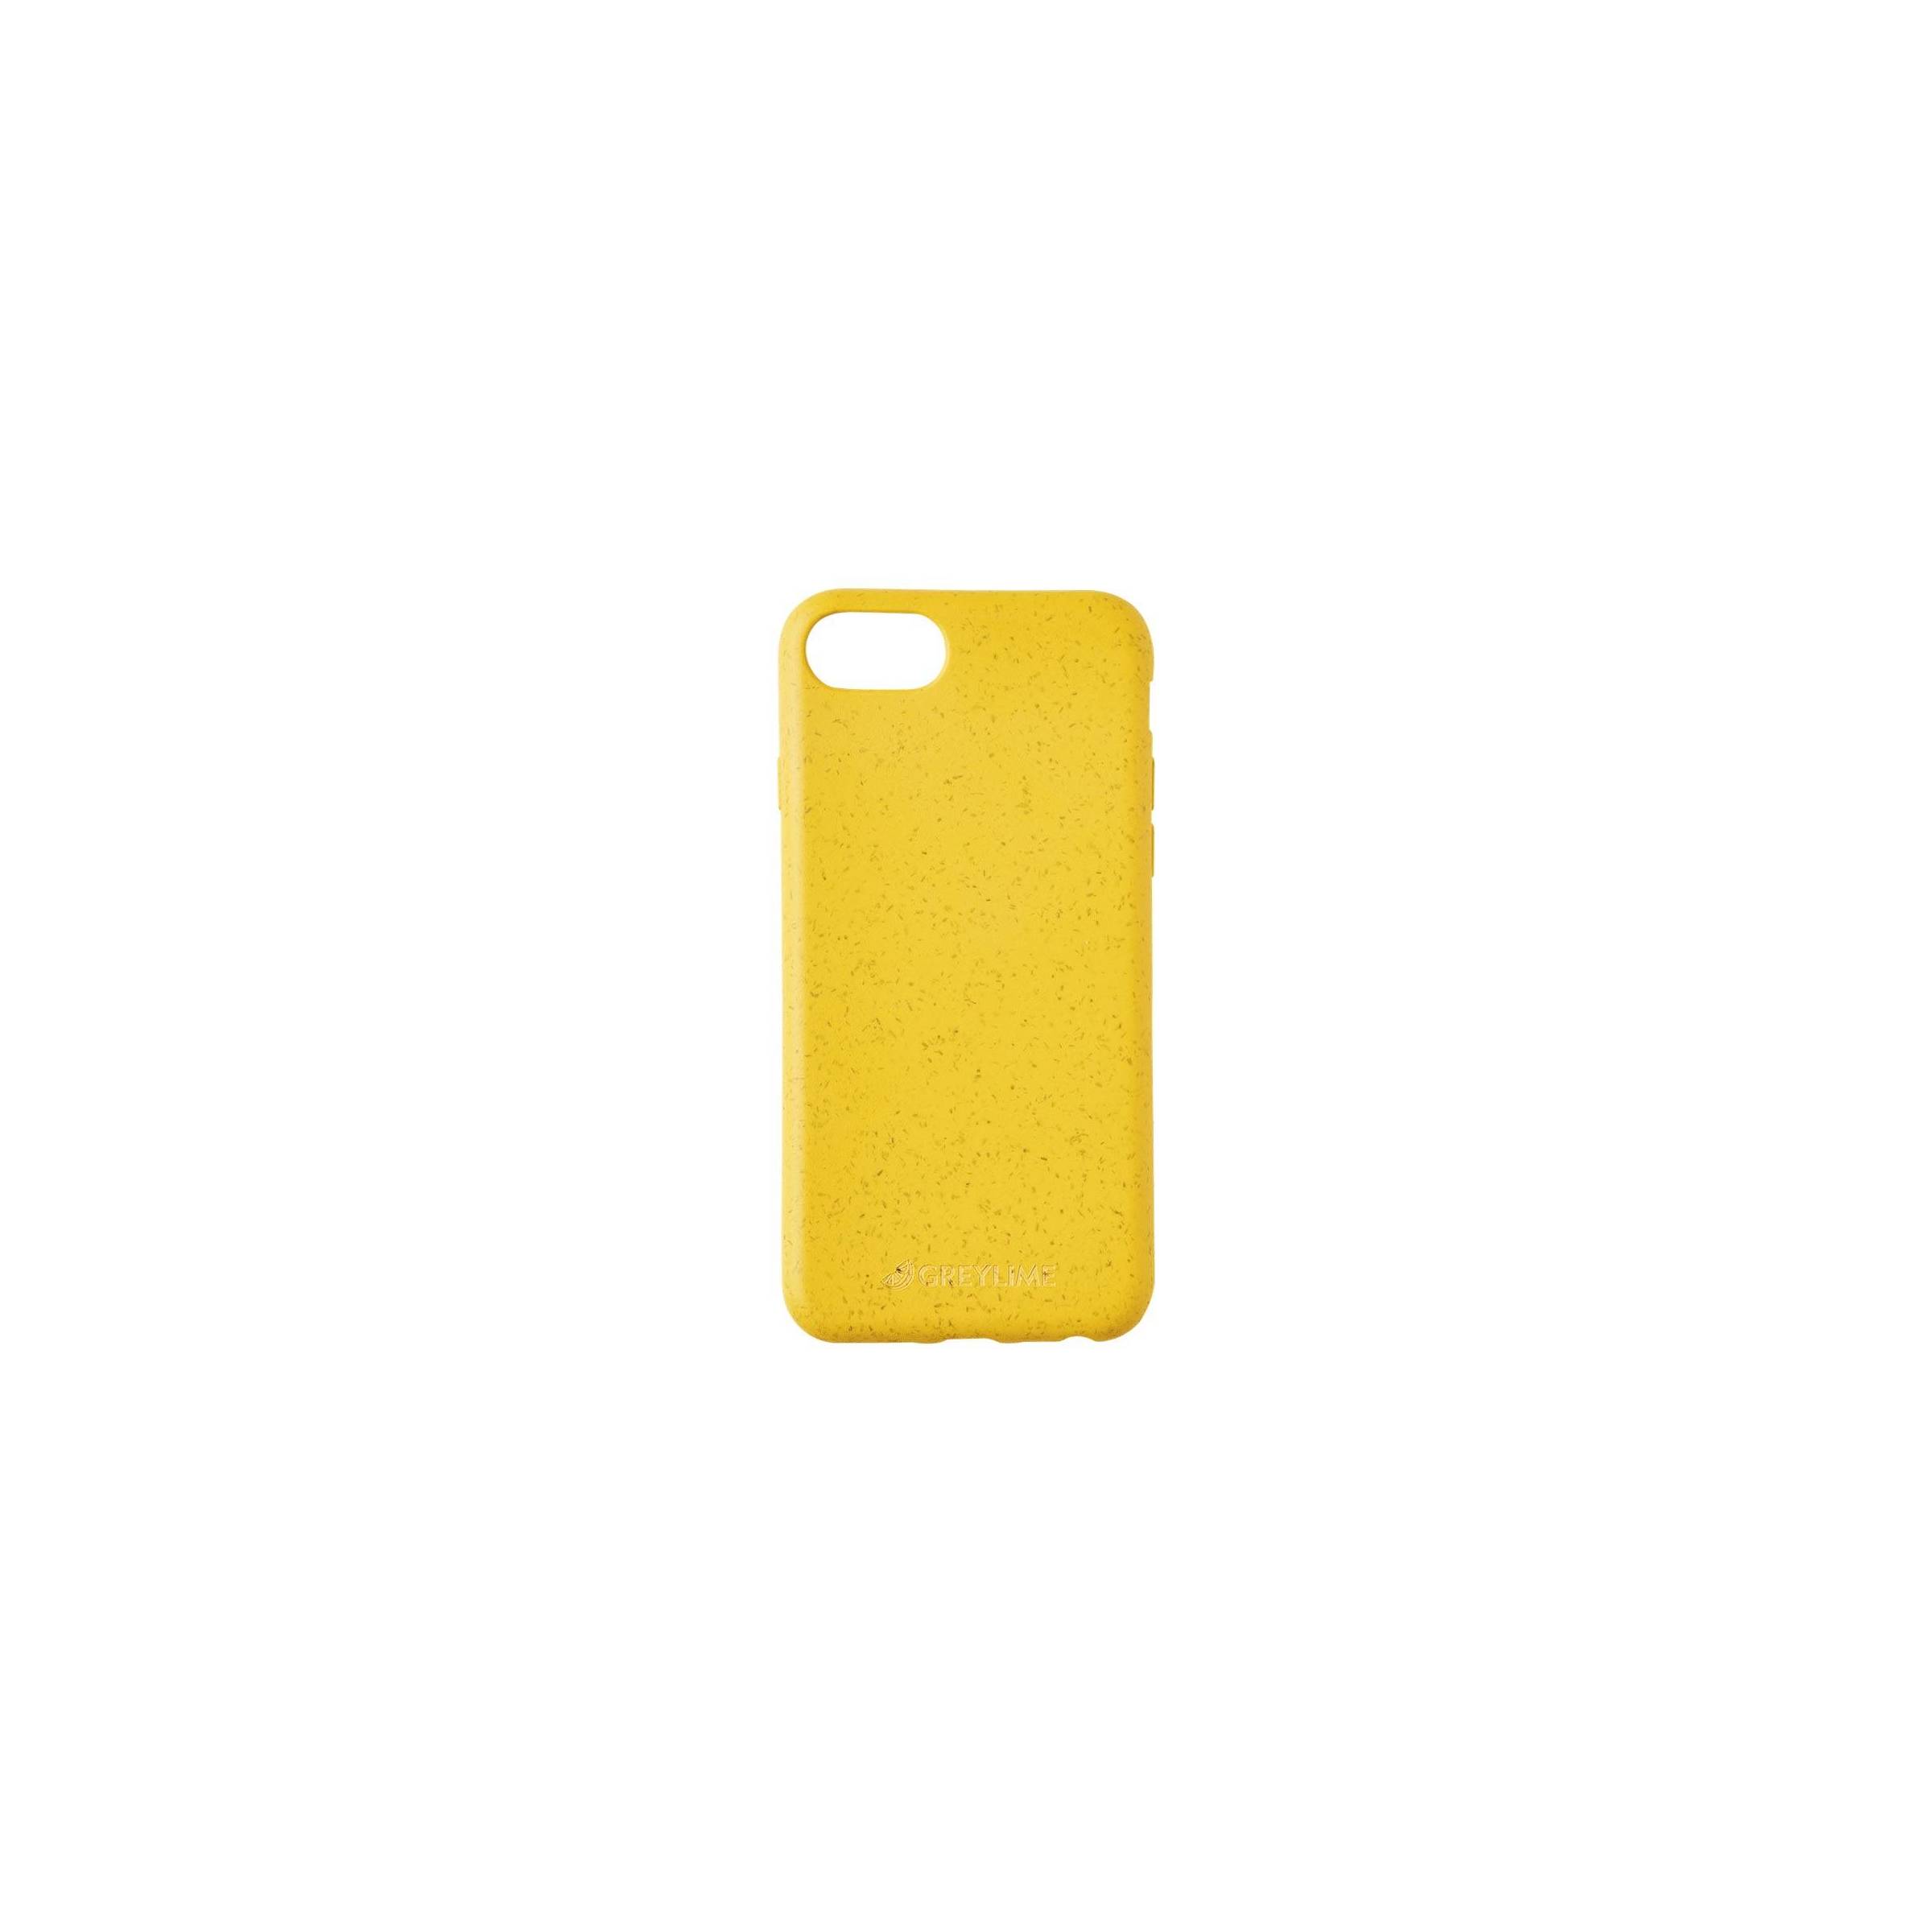 Bilde av Greylime Iphone 6/7/8/se Biodegradable Cover, Yellow